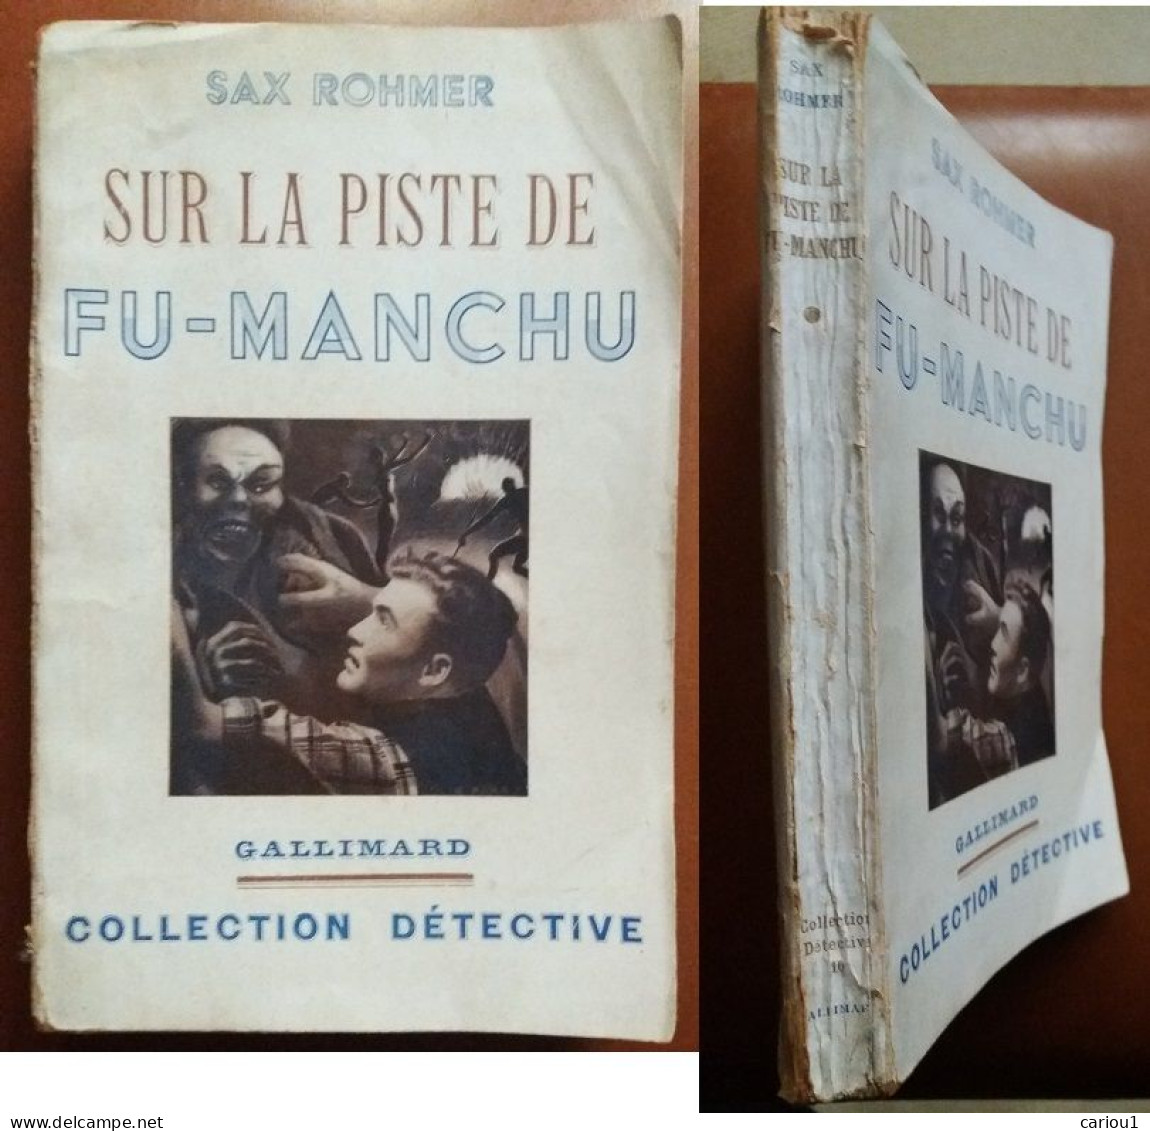 C1 Sax ROHMER - SUR LA PISTE DE FU MANCHU EO 1938 The Trail Of Fu Manchu SF PORT INCLUS France - Before 1950